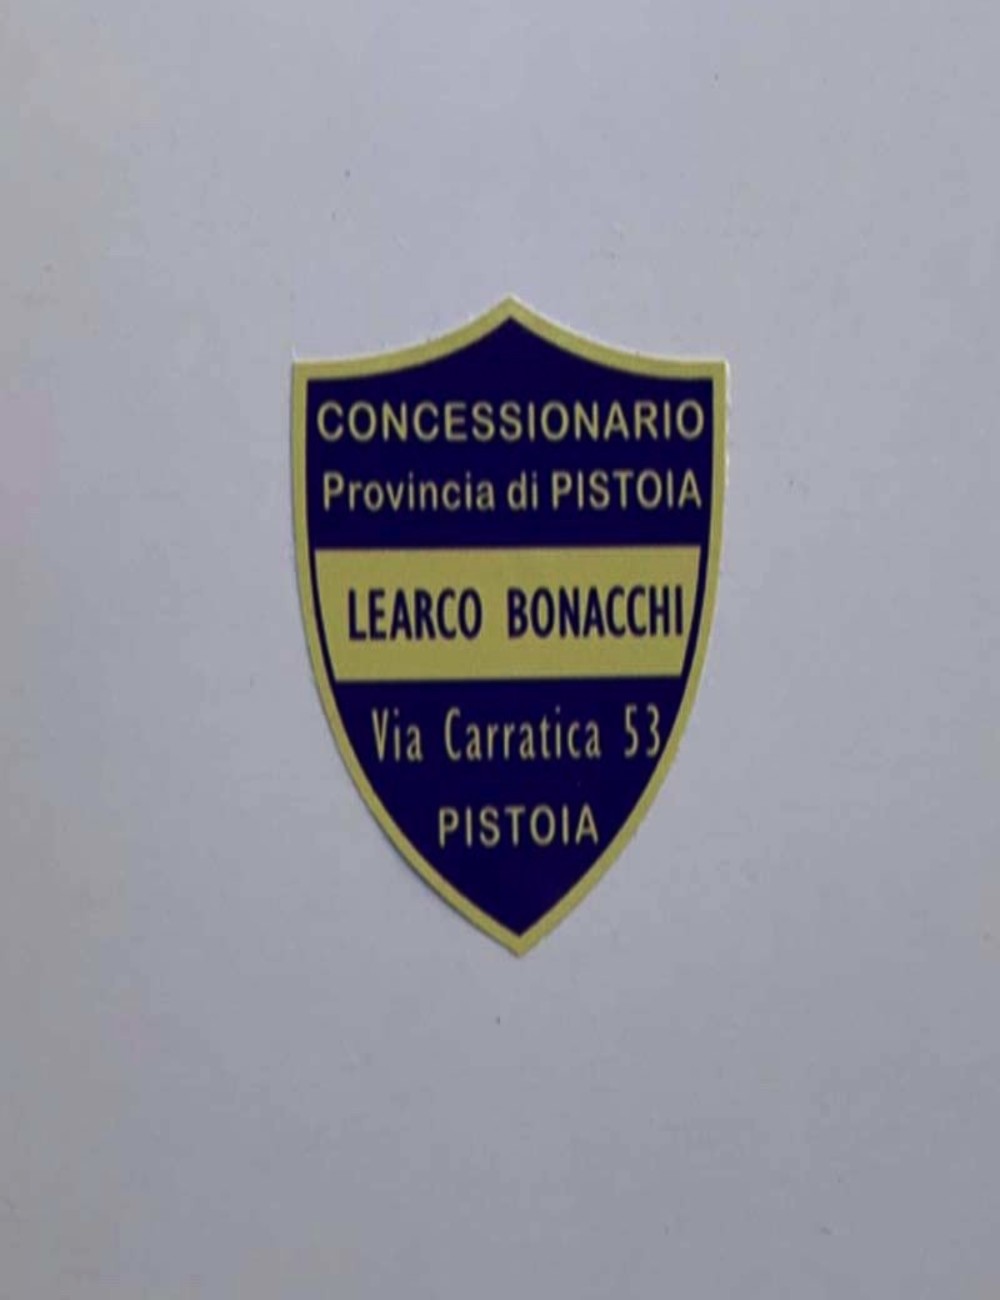 Concessionario Learco Bonacchi. Dimensioni 4,7 cm x 4,2 cm.